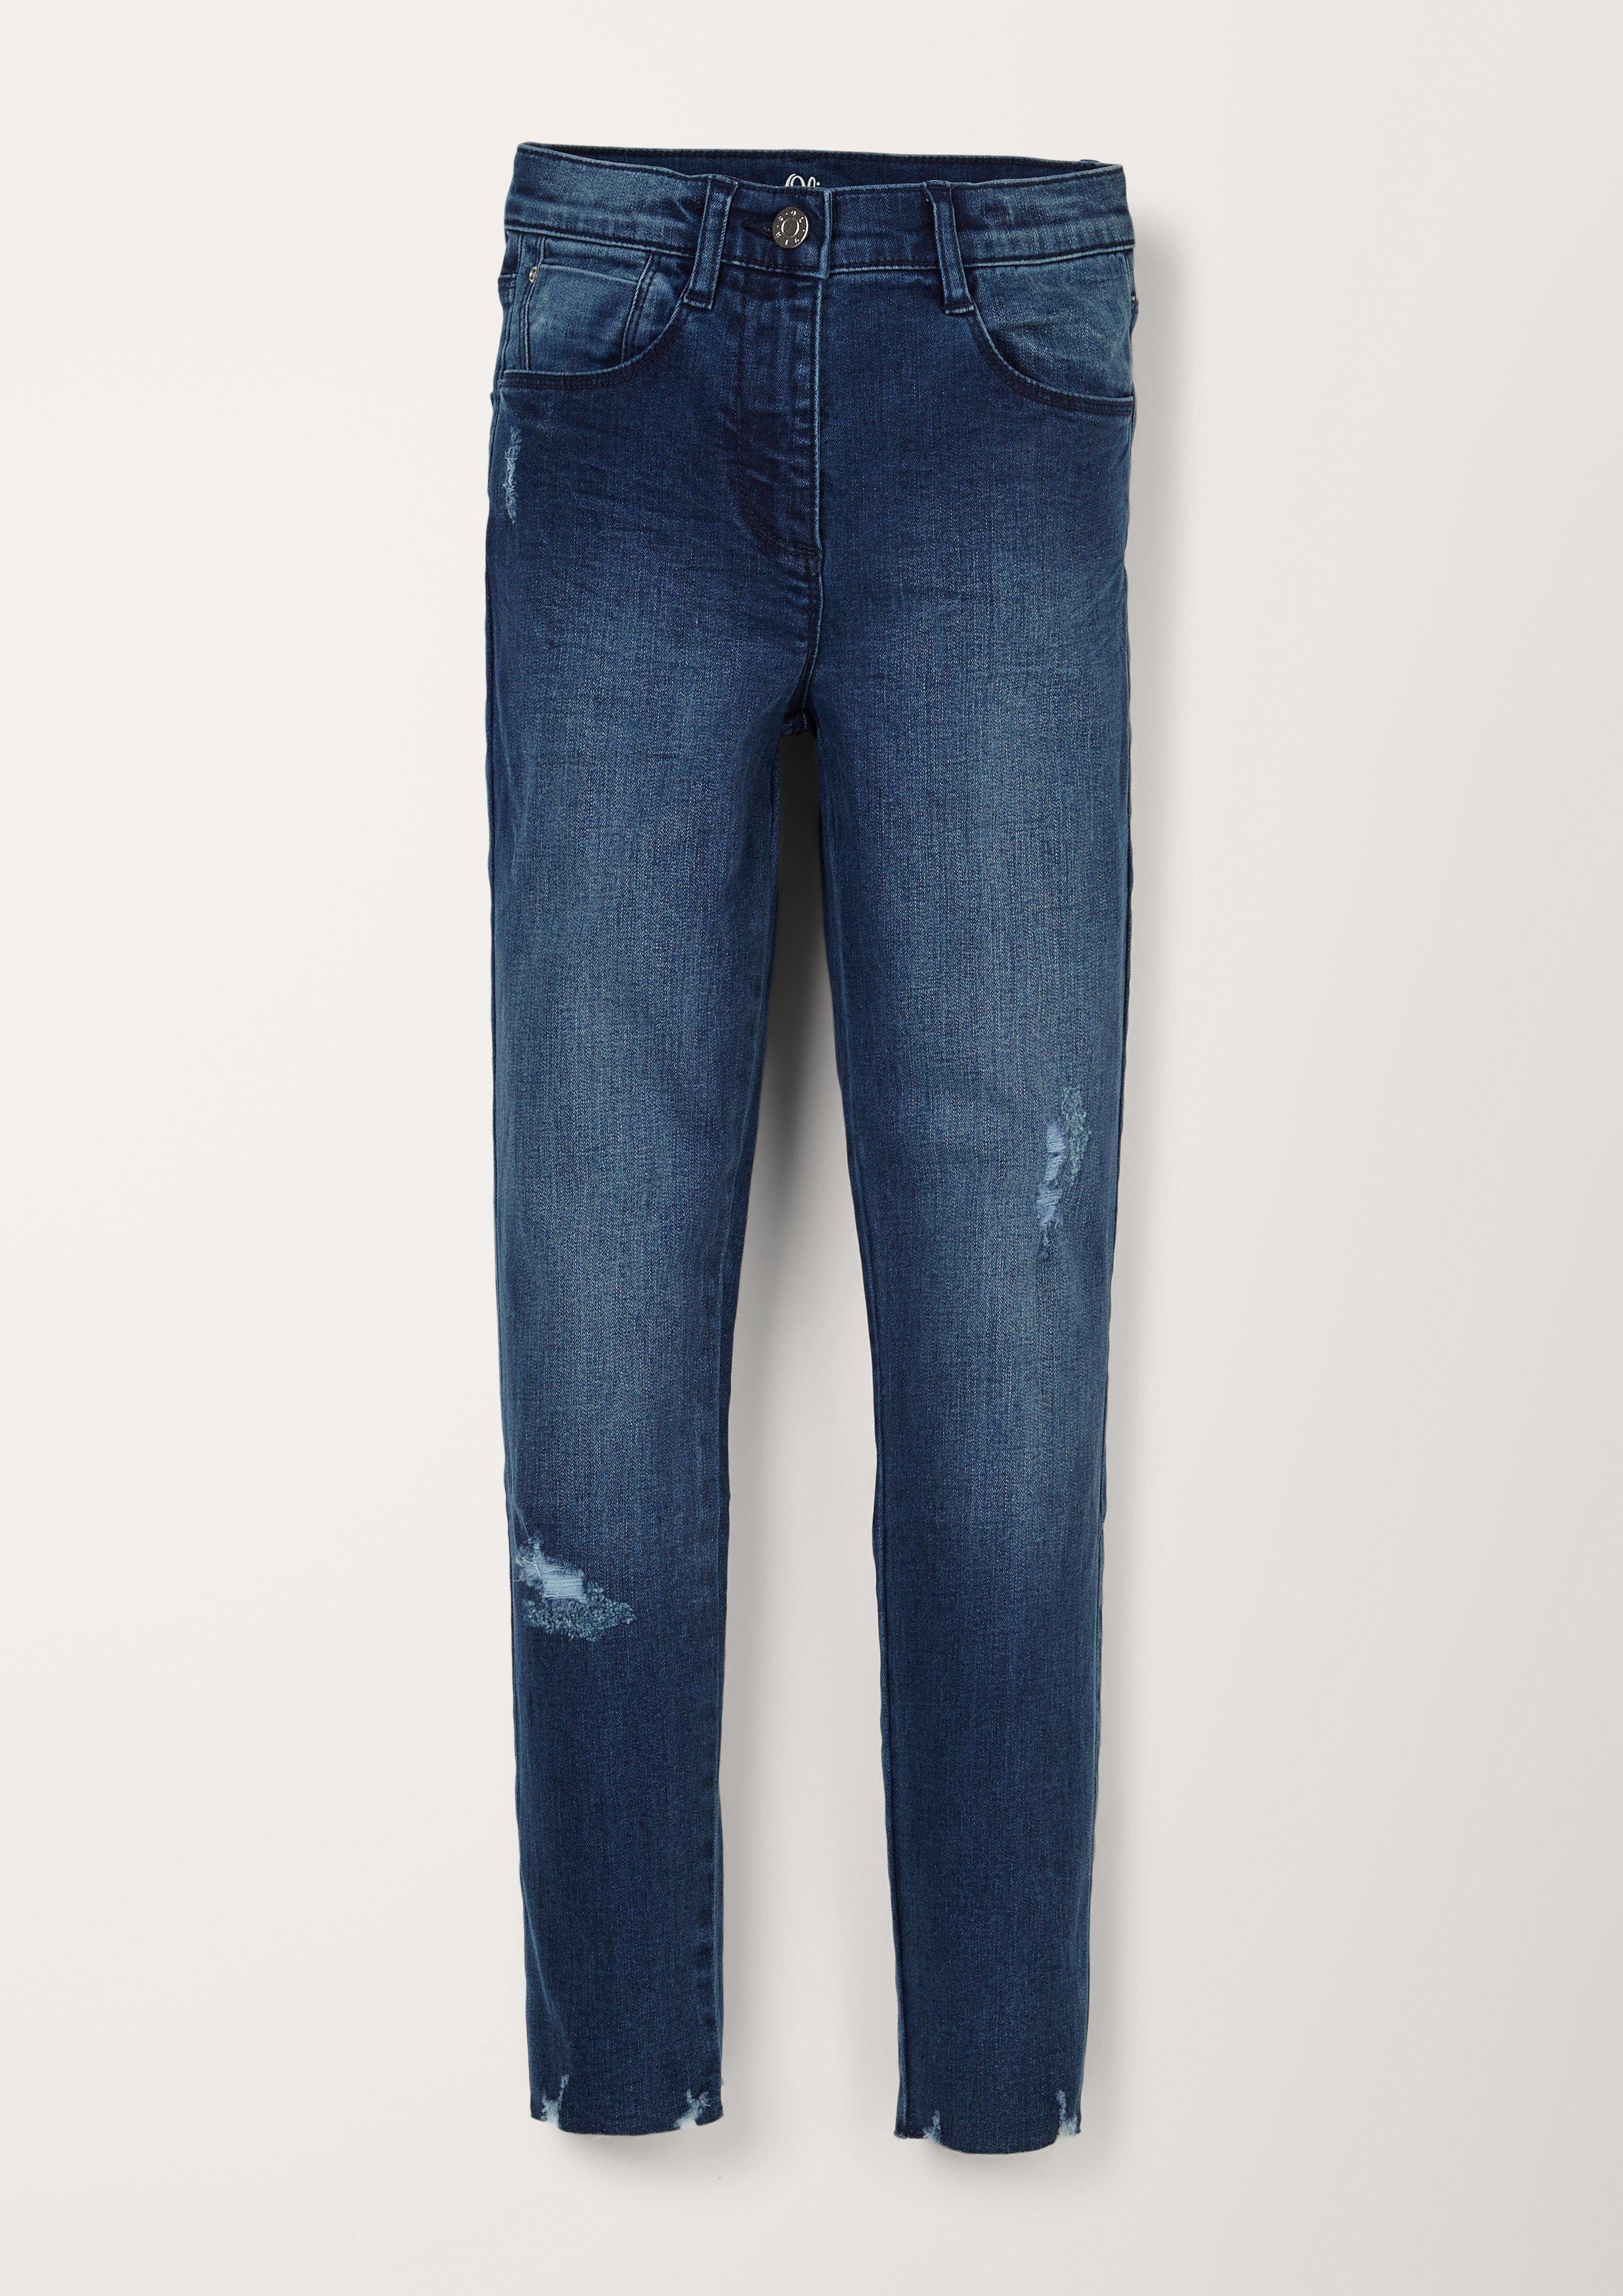 s.Oliver 5-Pocket-Jeans Skinny Suri: Skinny leg-Jeans Destroyes dark blue